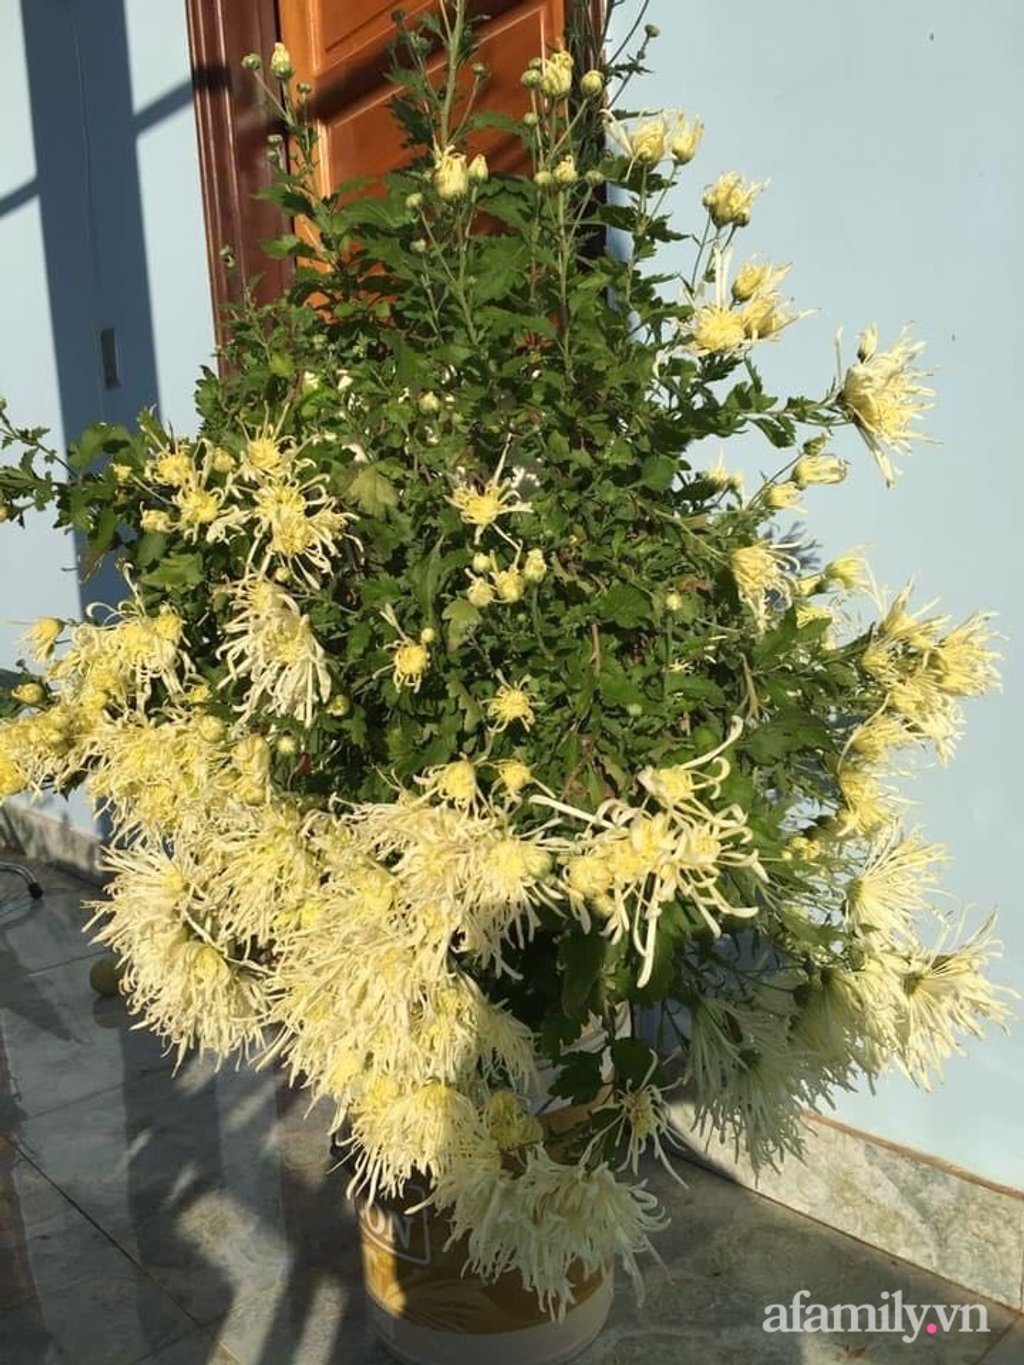 Hai cây cúc đầu tiên được chị Phương trồng vào năm 2018. Đây cũng là những cây cúc giúp chị thêm yêu loài hoa đặc biệt này, loài hoa dễ chăm sóc, nở nhiều hoa và rất bền màu.